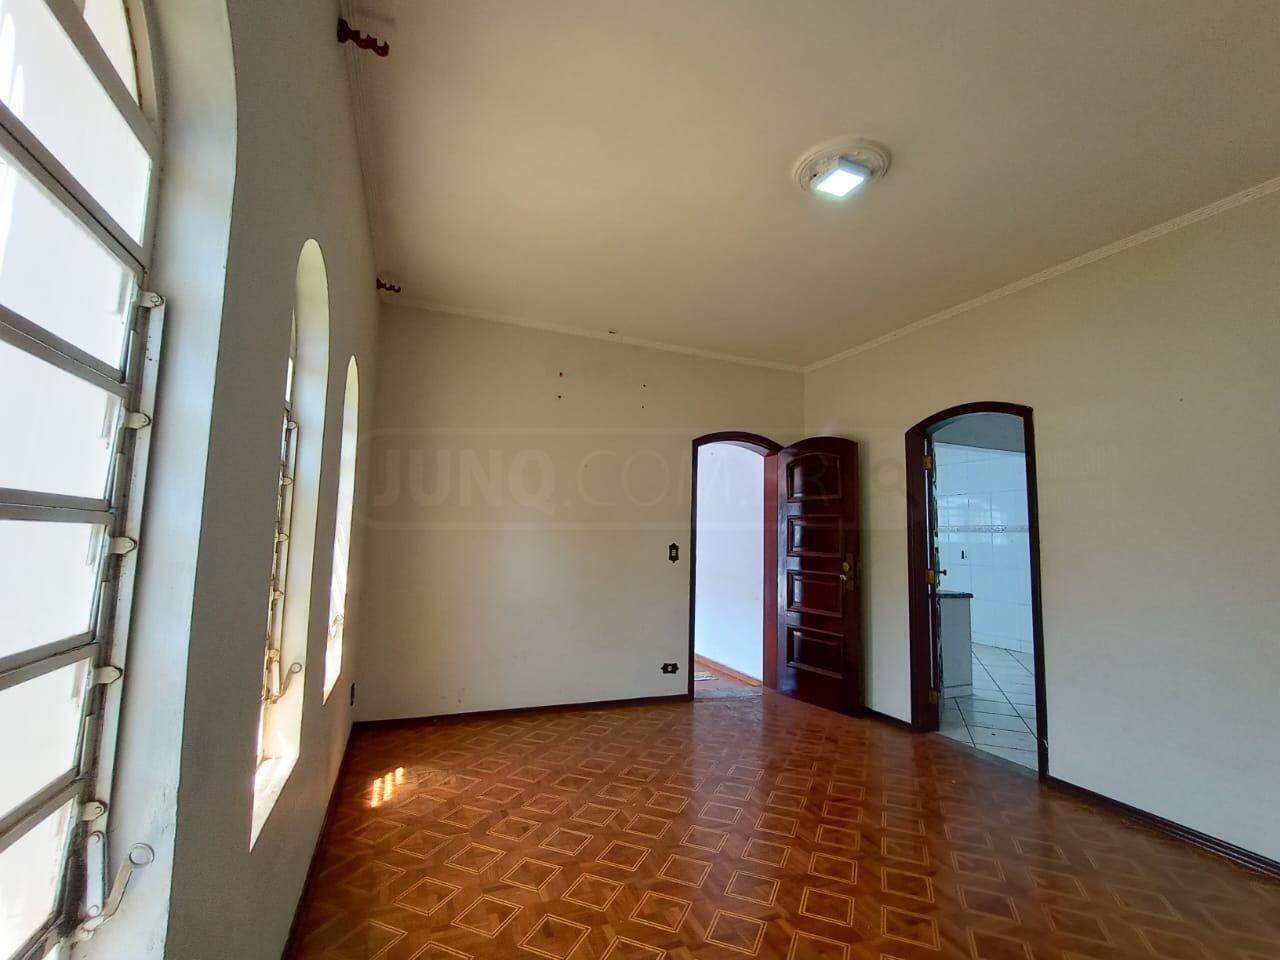 Casa para alugar, 3 quartos, sendo 1 suíte, 2 vagas, no bairro Piracicamirim em Piracicaba - SP